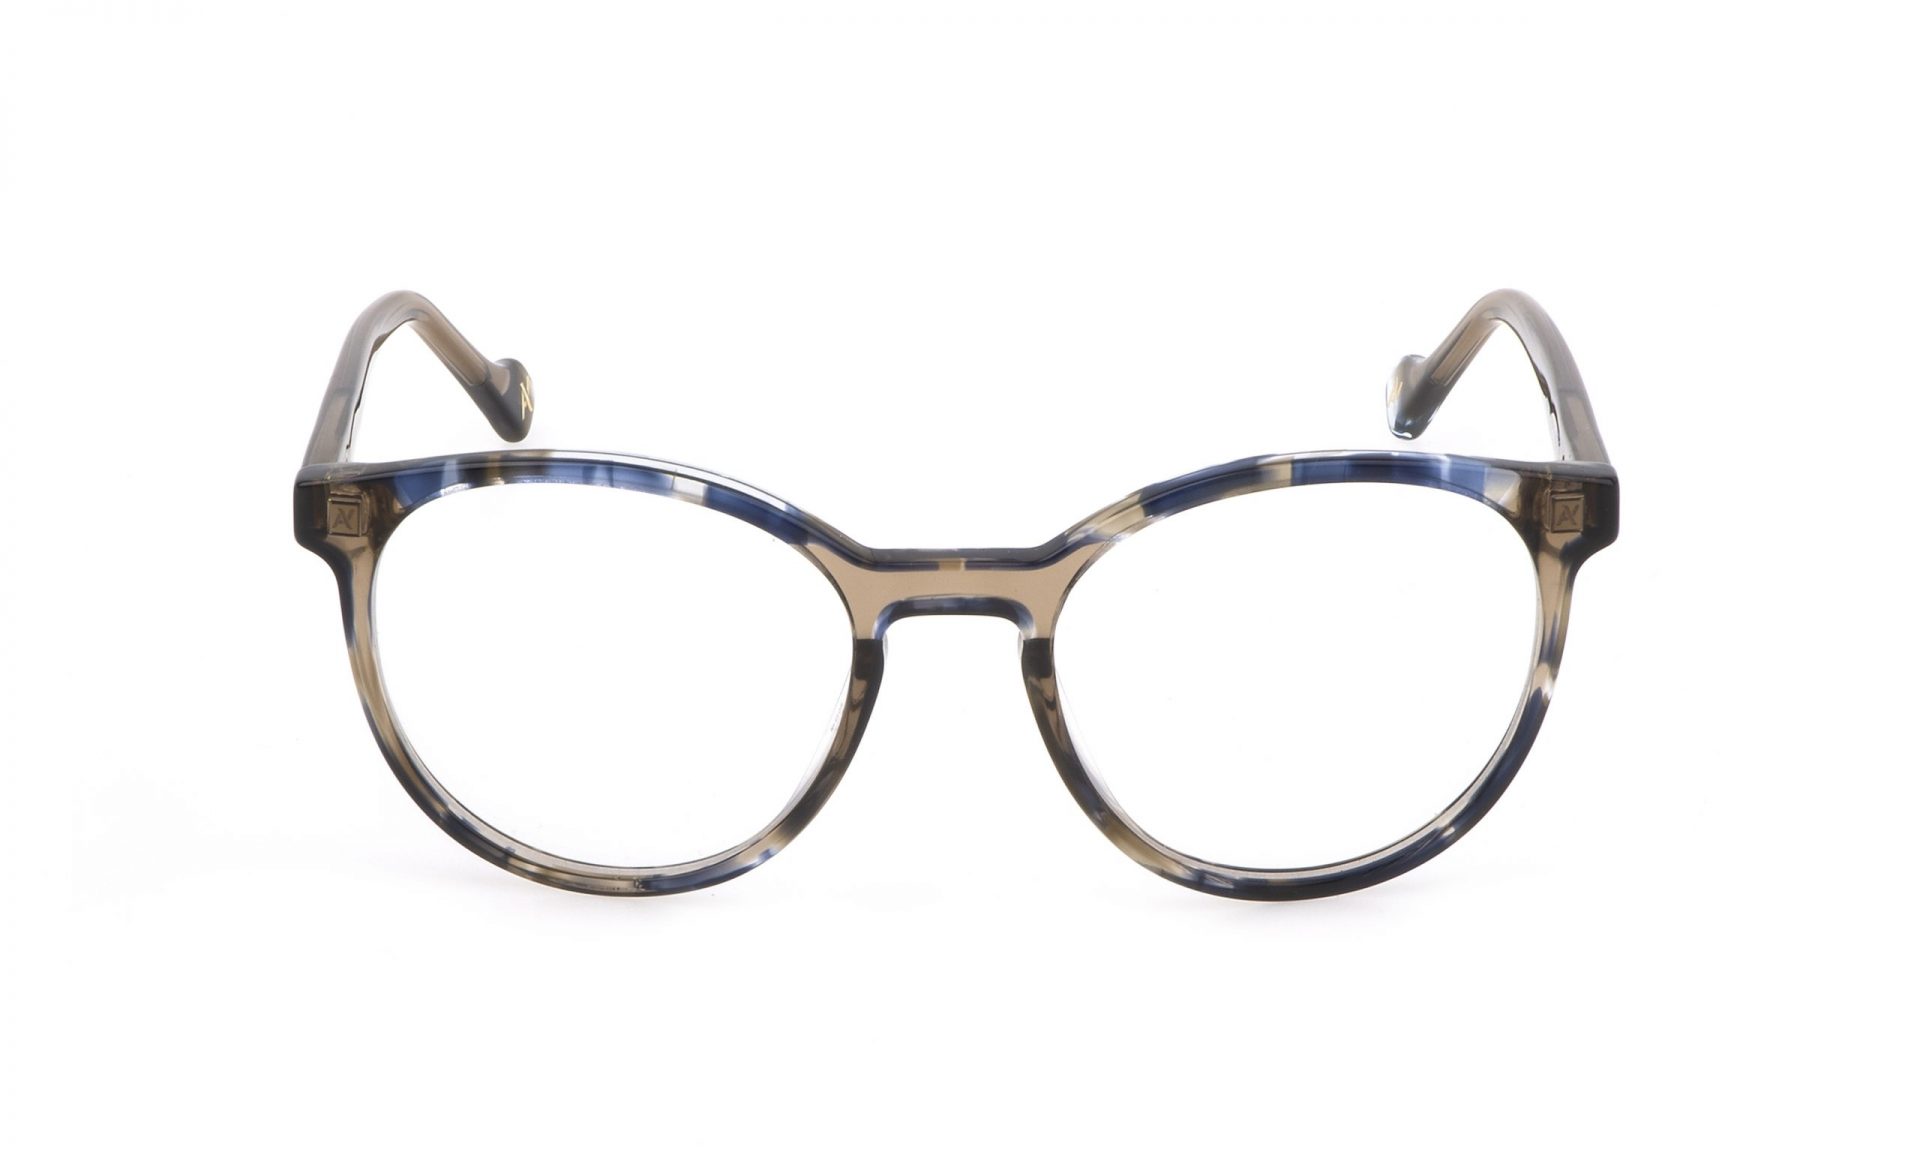 Yalea VYA096V Eyeglasses - Yalea Authorized Retailer